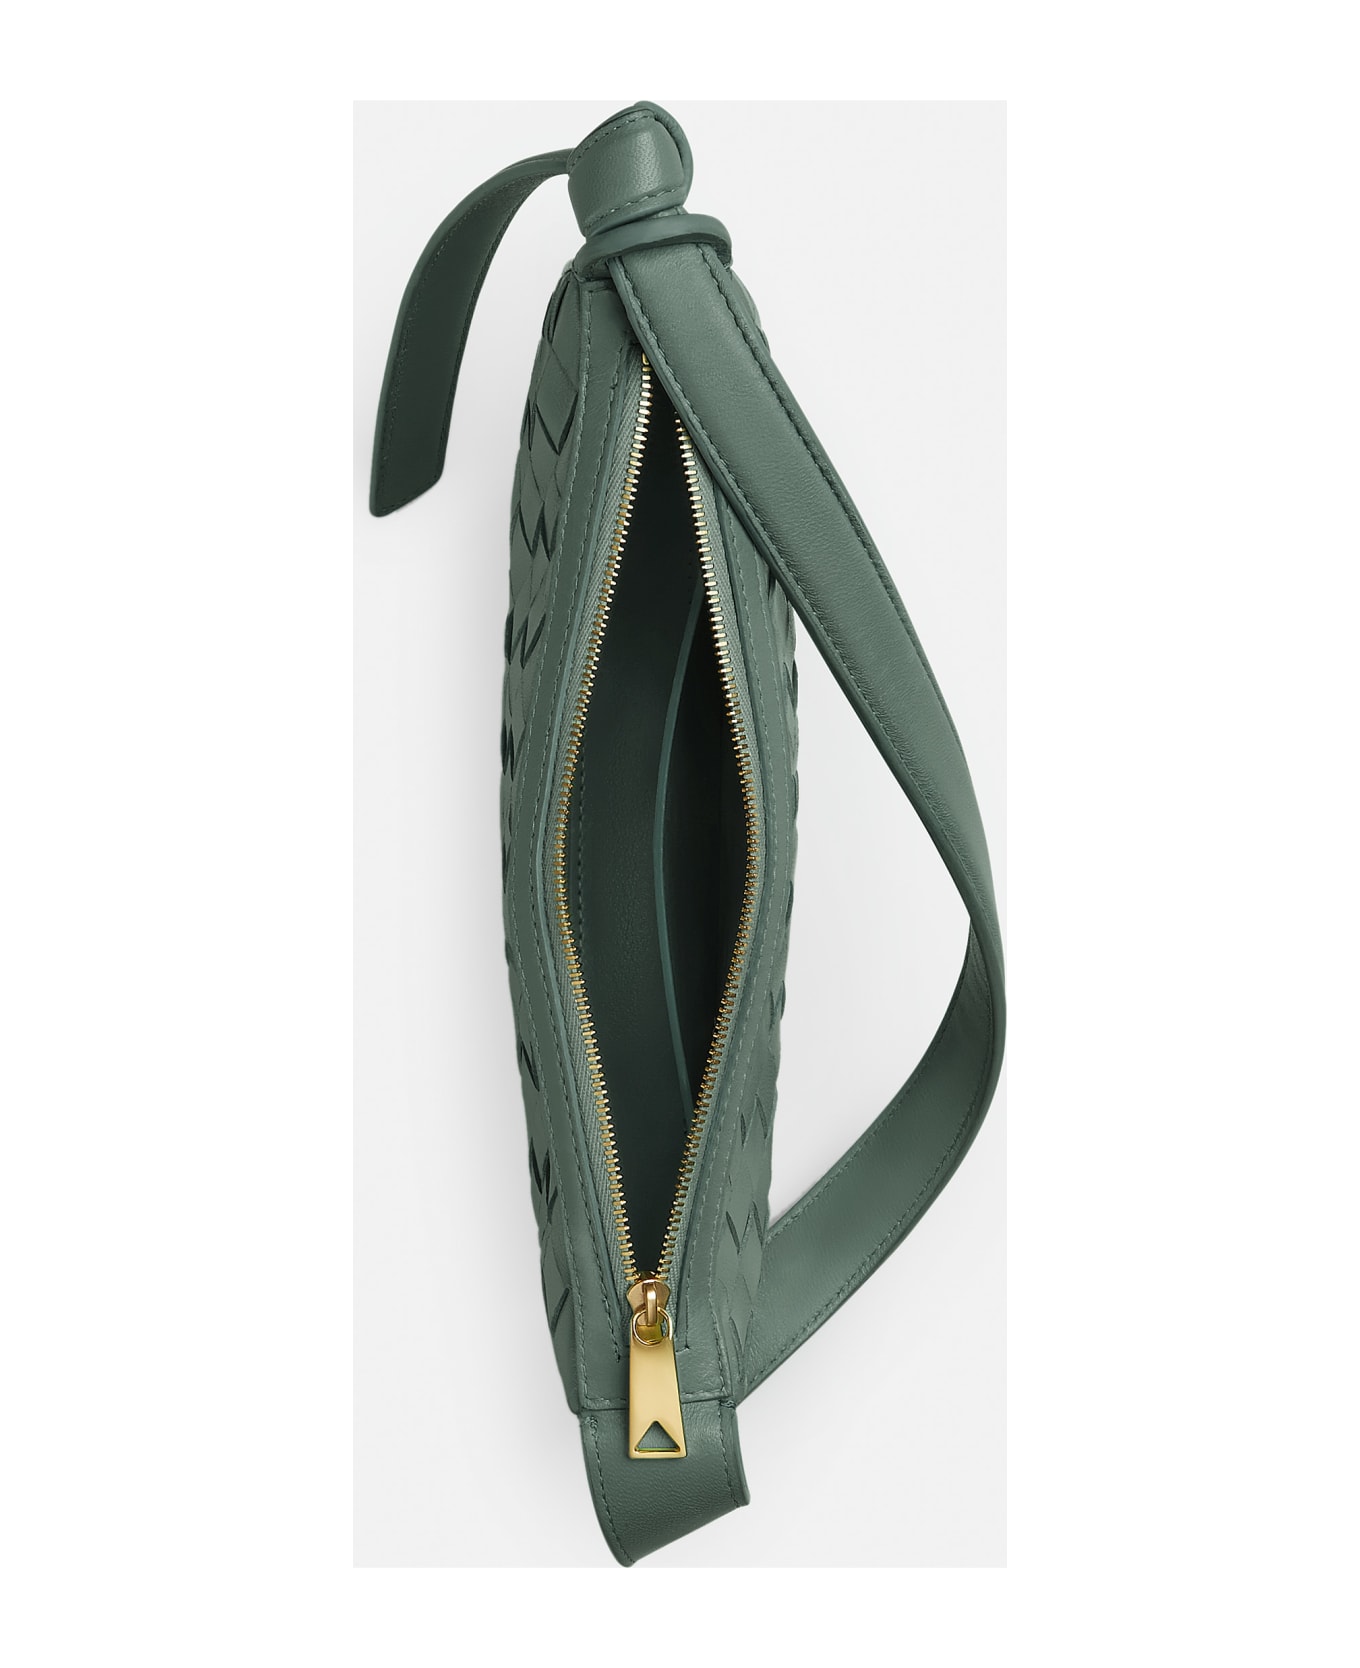 Bottega Veneta Leather Shoulder Bag - Green トートバッグ